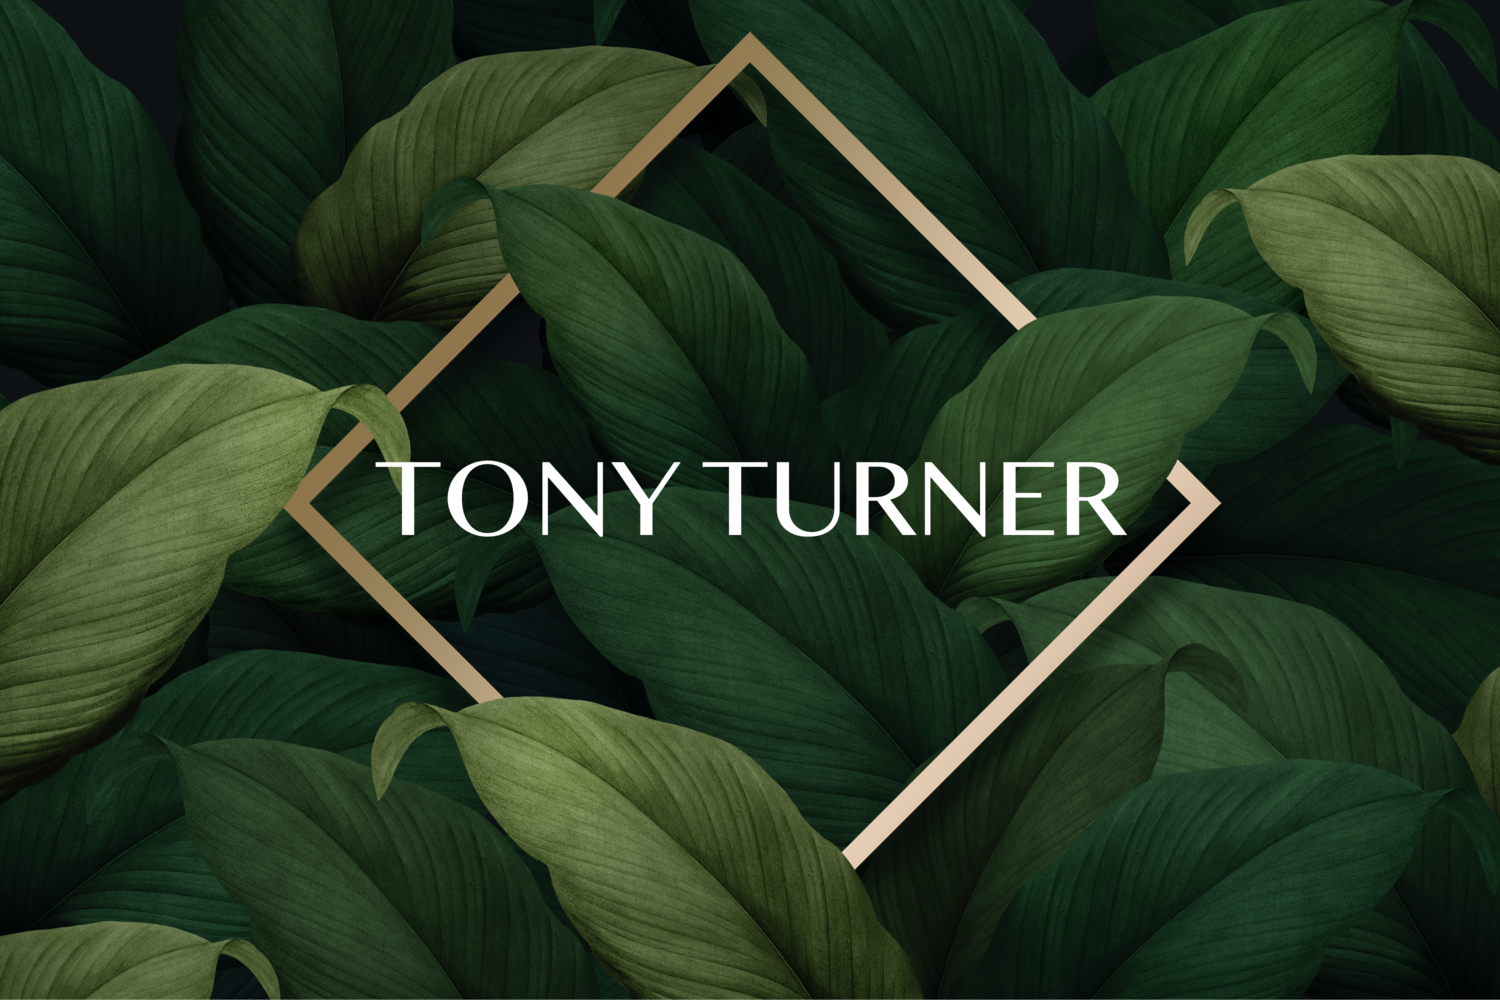 Tony Turner